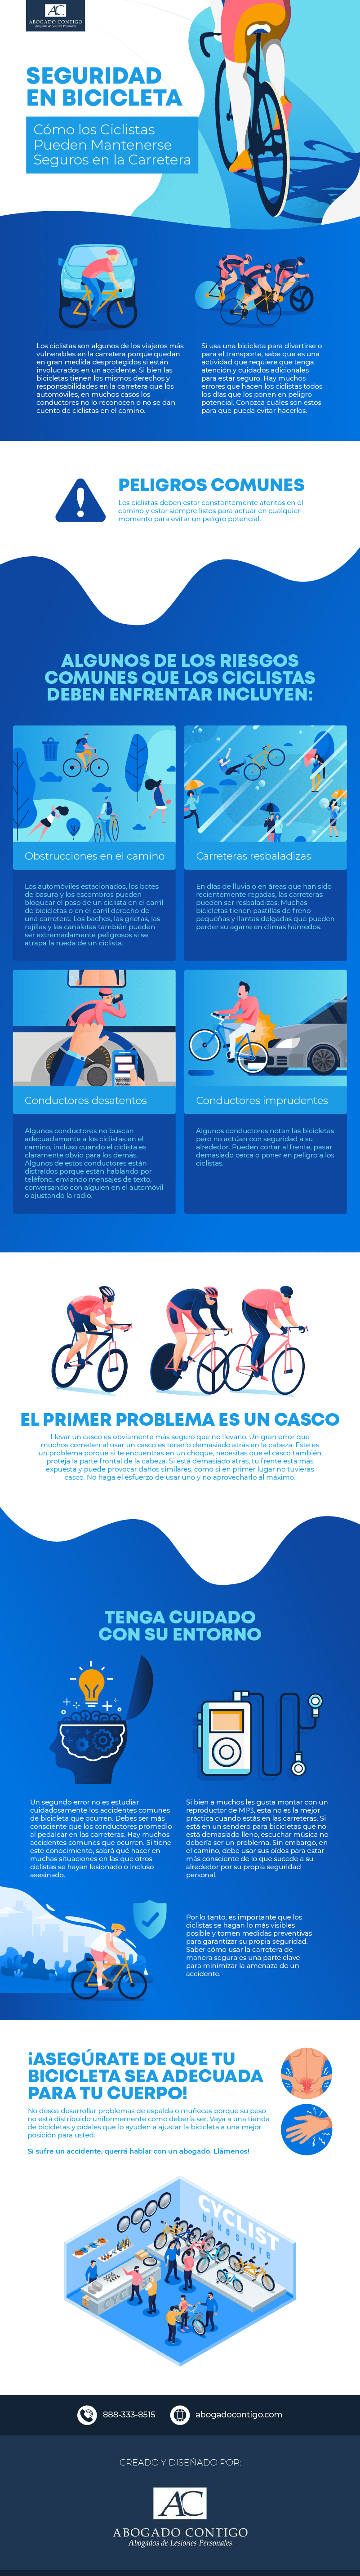 Seguridad en bicicleta: Cómo los ciclistas pueden mantenerse seguros en el camino (Bicycle Safety)